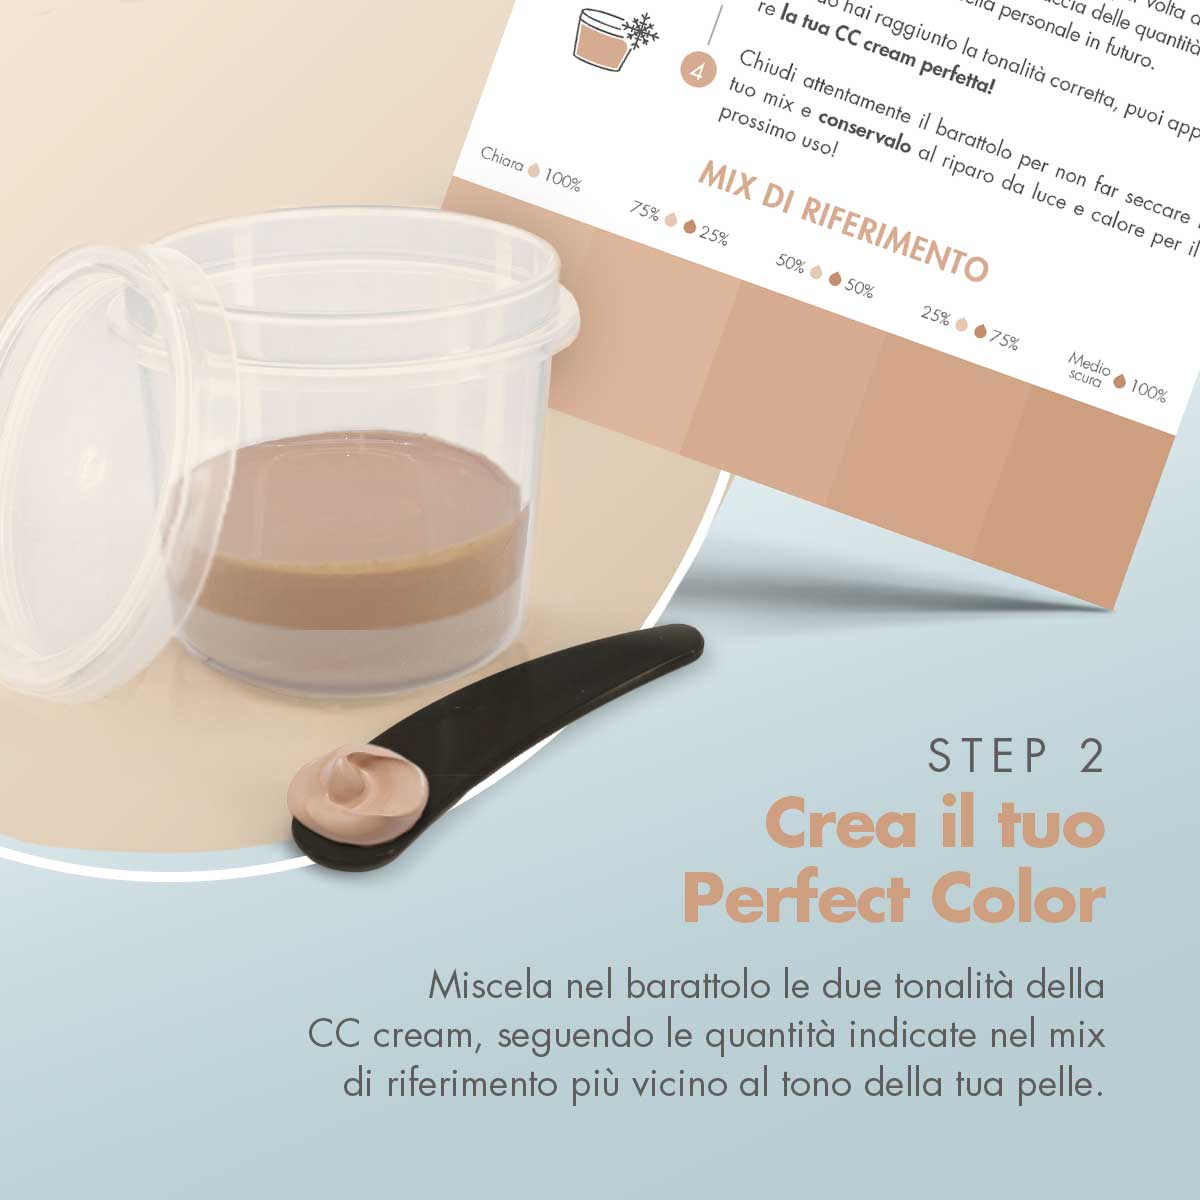 CC cream medio-scura + Box perfect color